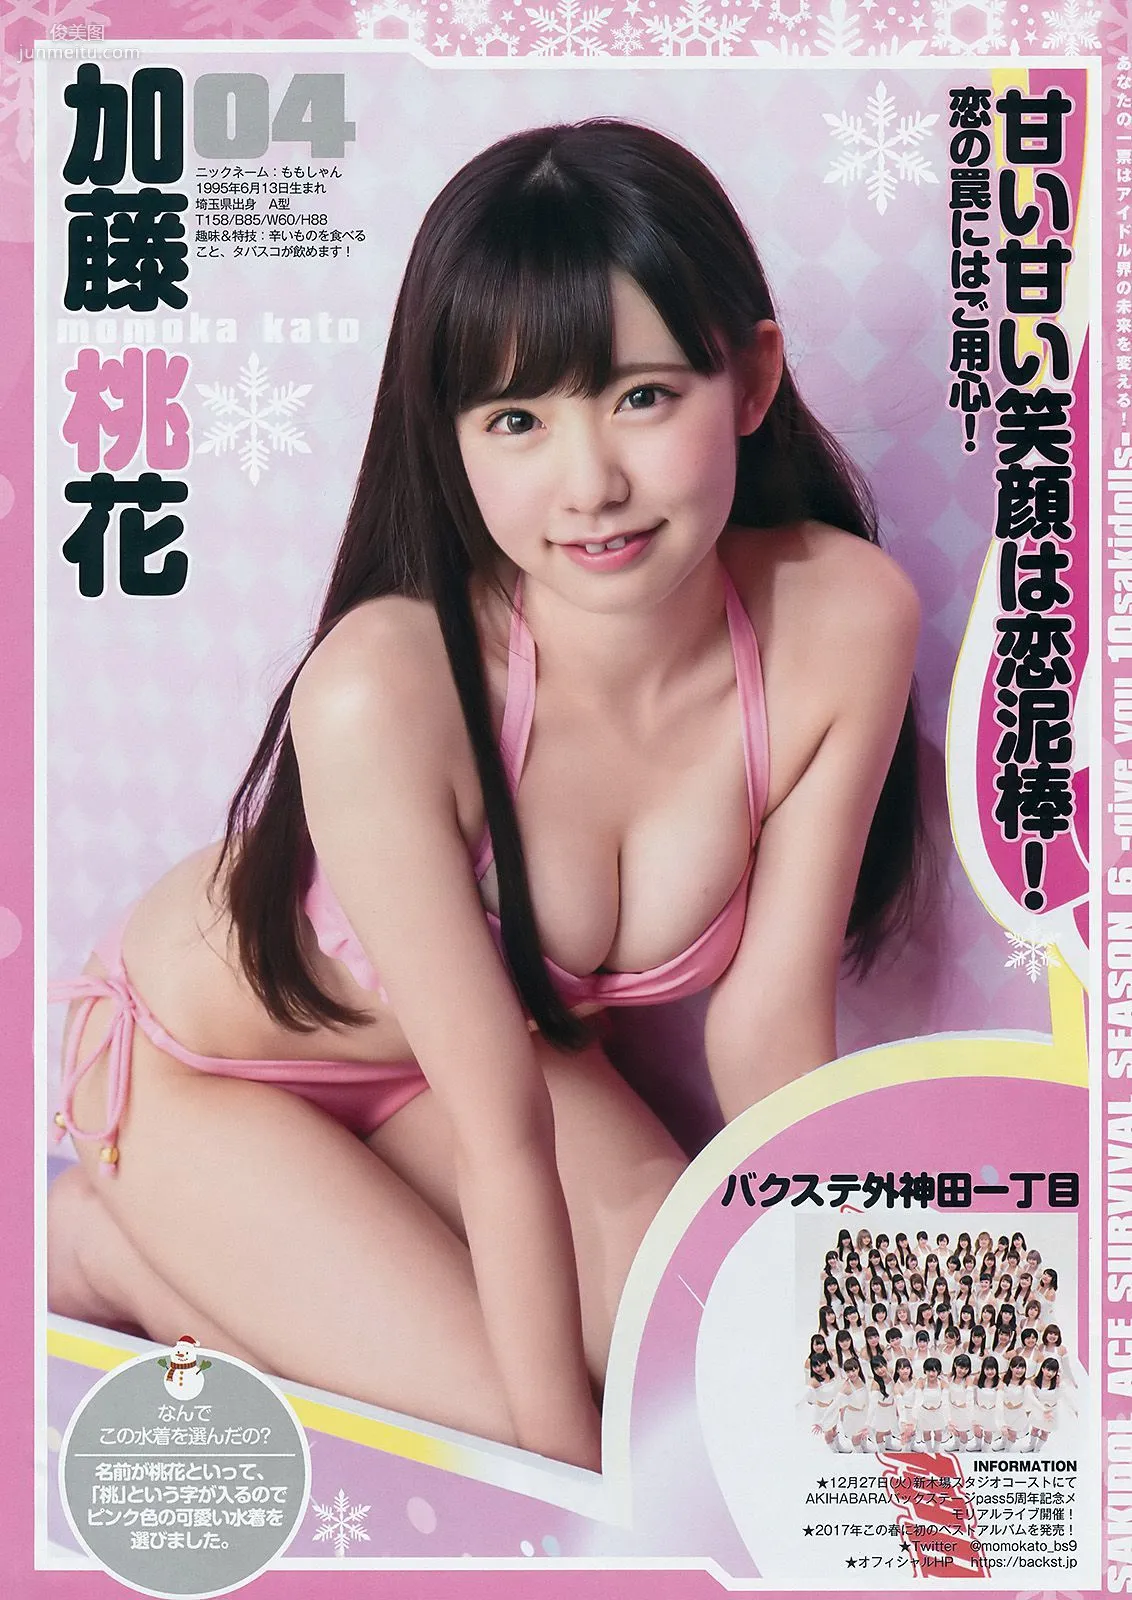 サキドルエースSURVIVAL SEASON6《give you 10sakidolls》 [Weekly Young Jump] 2017年No.03-04 写真杂志6